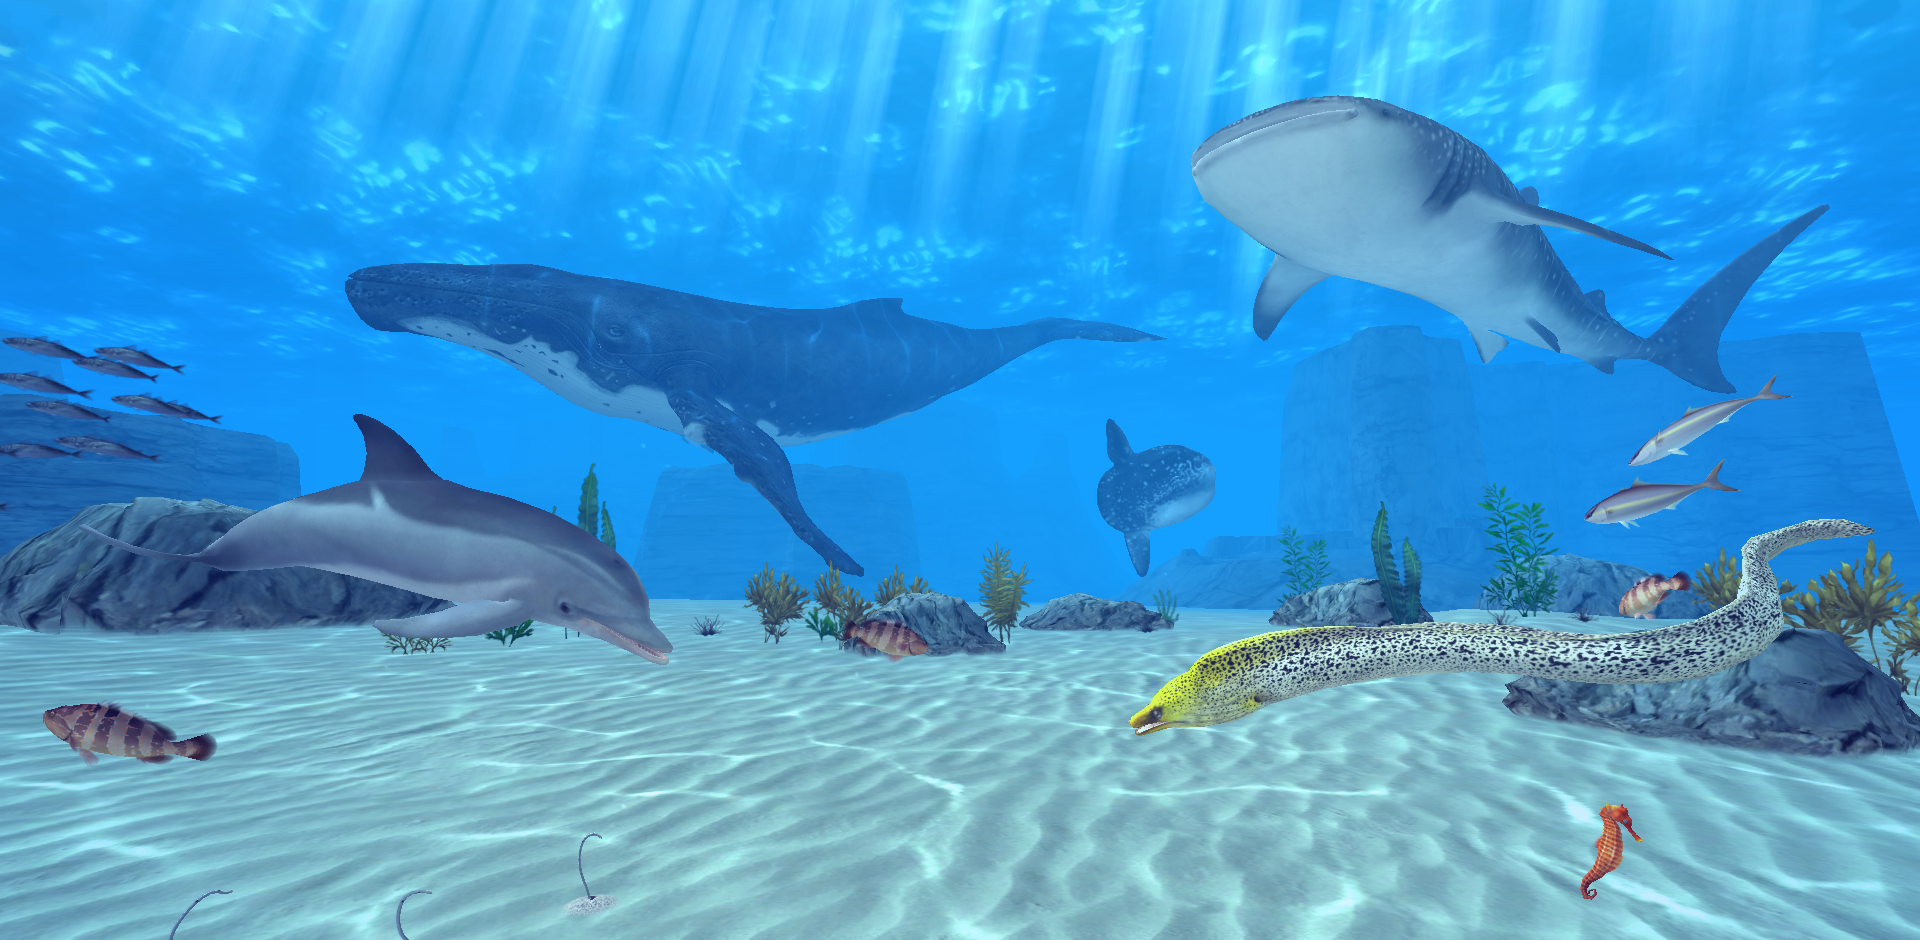 Lineゲーム 3dグラフィックでスマホに海底景観を再現 Line Easy Diver 登場 Line公式ブログ